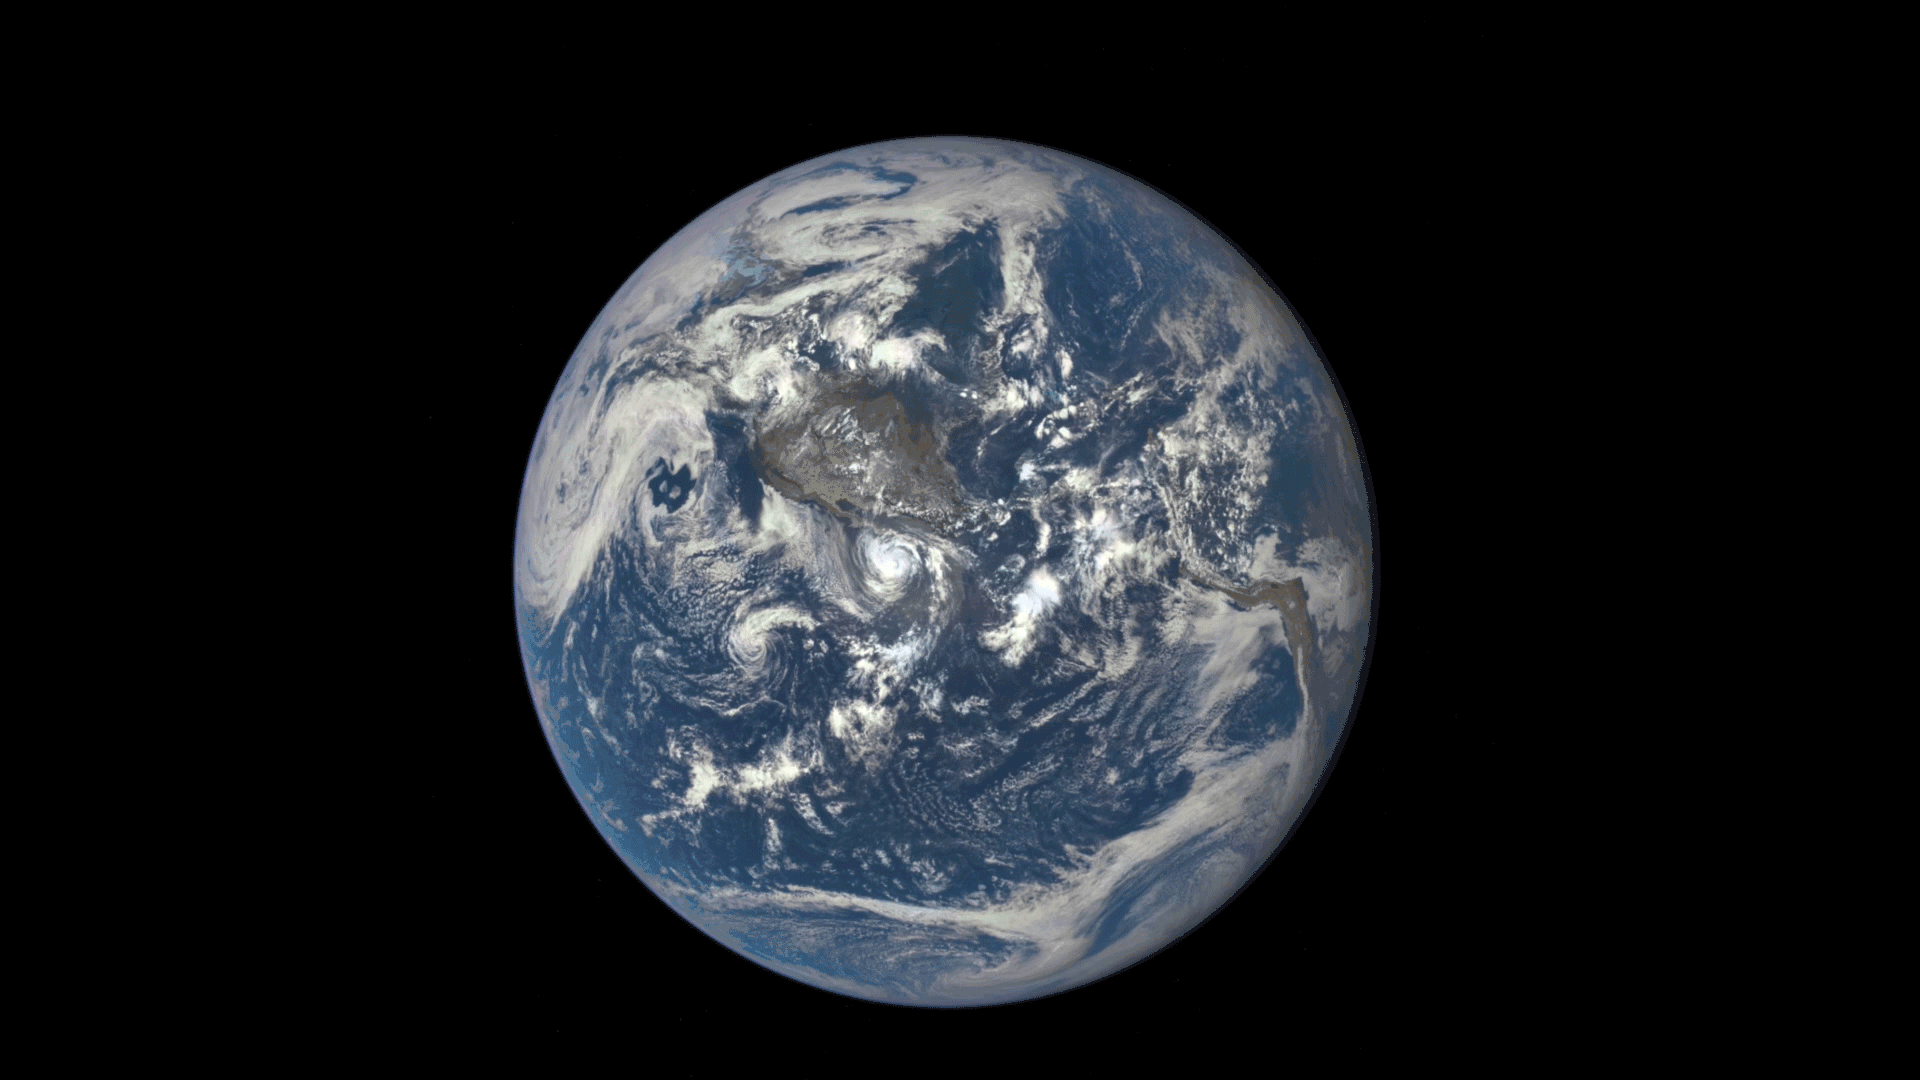 10张图带你看人类家园——在太空遥望,遇见远方蓝色星球的模样